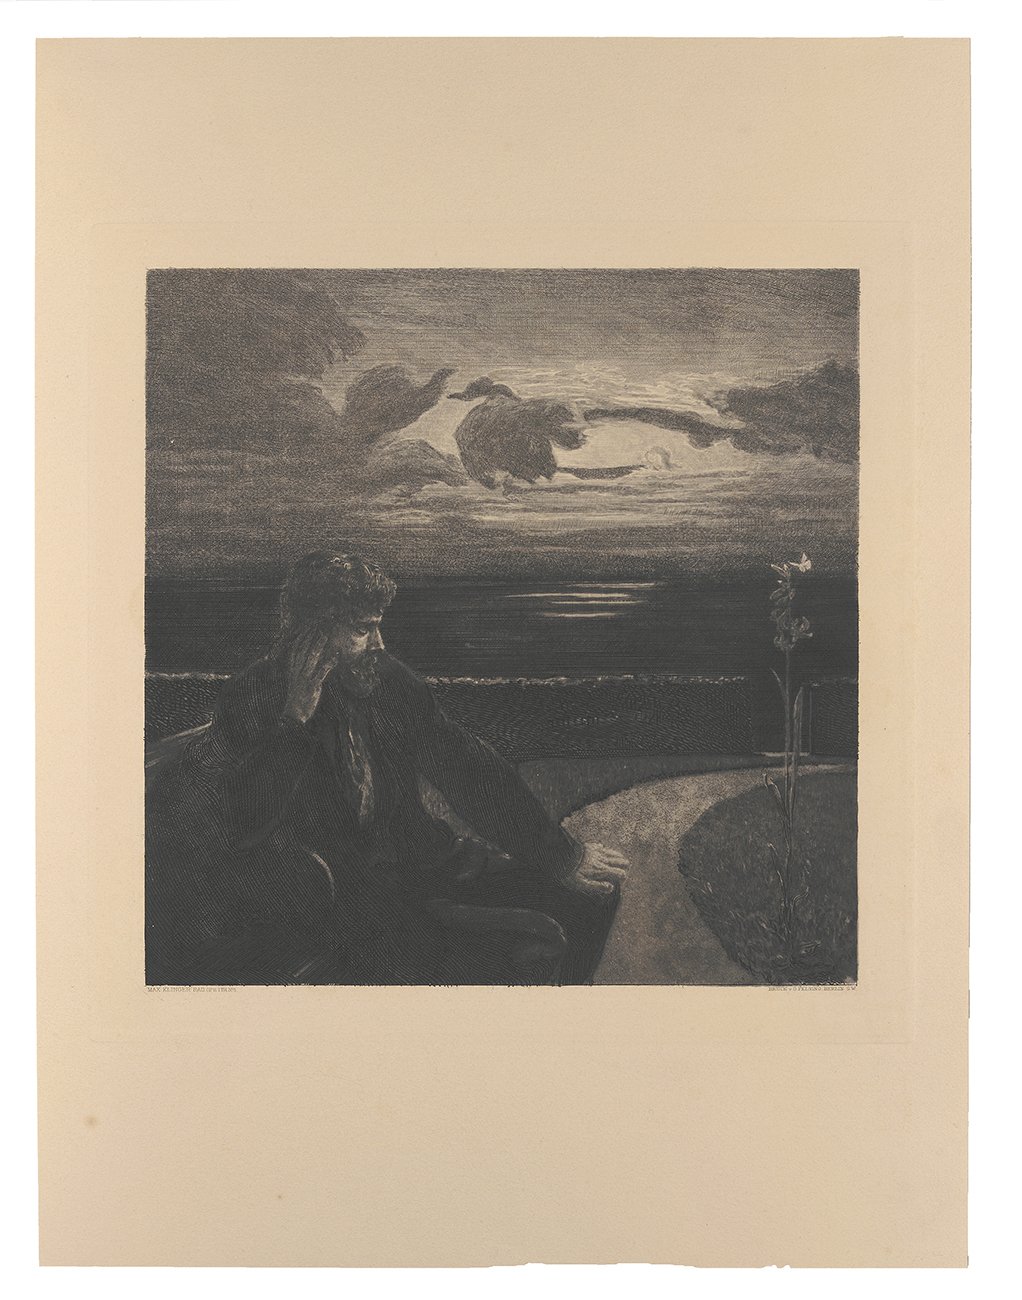 Vom Tode. Erster Teil. Blatt 1: Nacht (Kunsthalle Bielefeld Public Domain Mark)